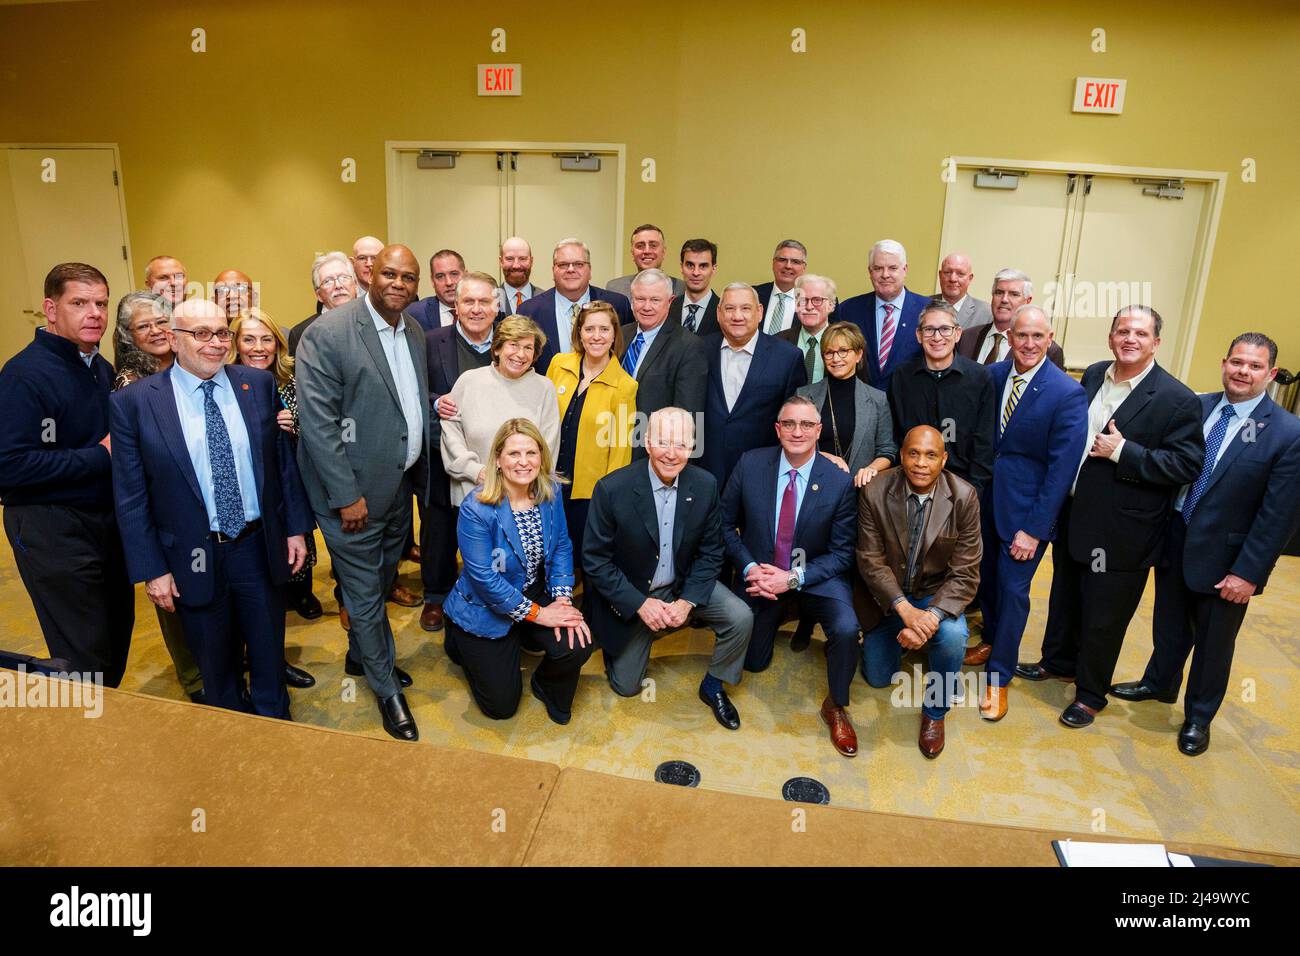 Le président Joe Biden rencontre des membres de la direction syndicale à l'hôtel Dupont à Wilmington, Delaware, le samedi 5 mars 2022. (Photo officielle de la Maison Blanche par Adam Schultz) Banque D'Images